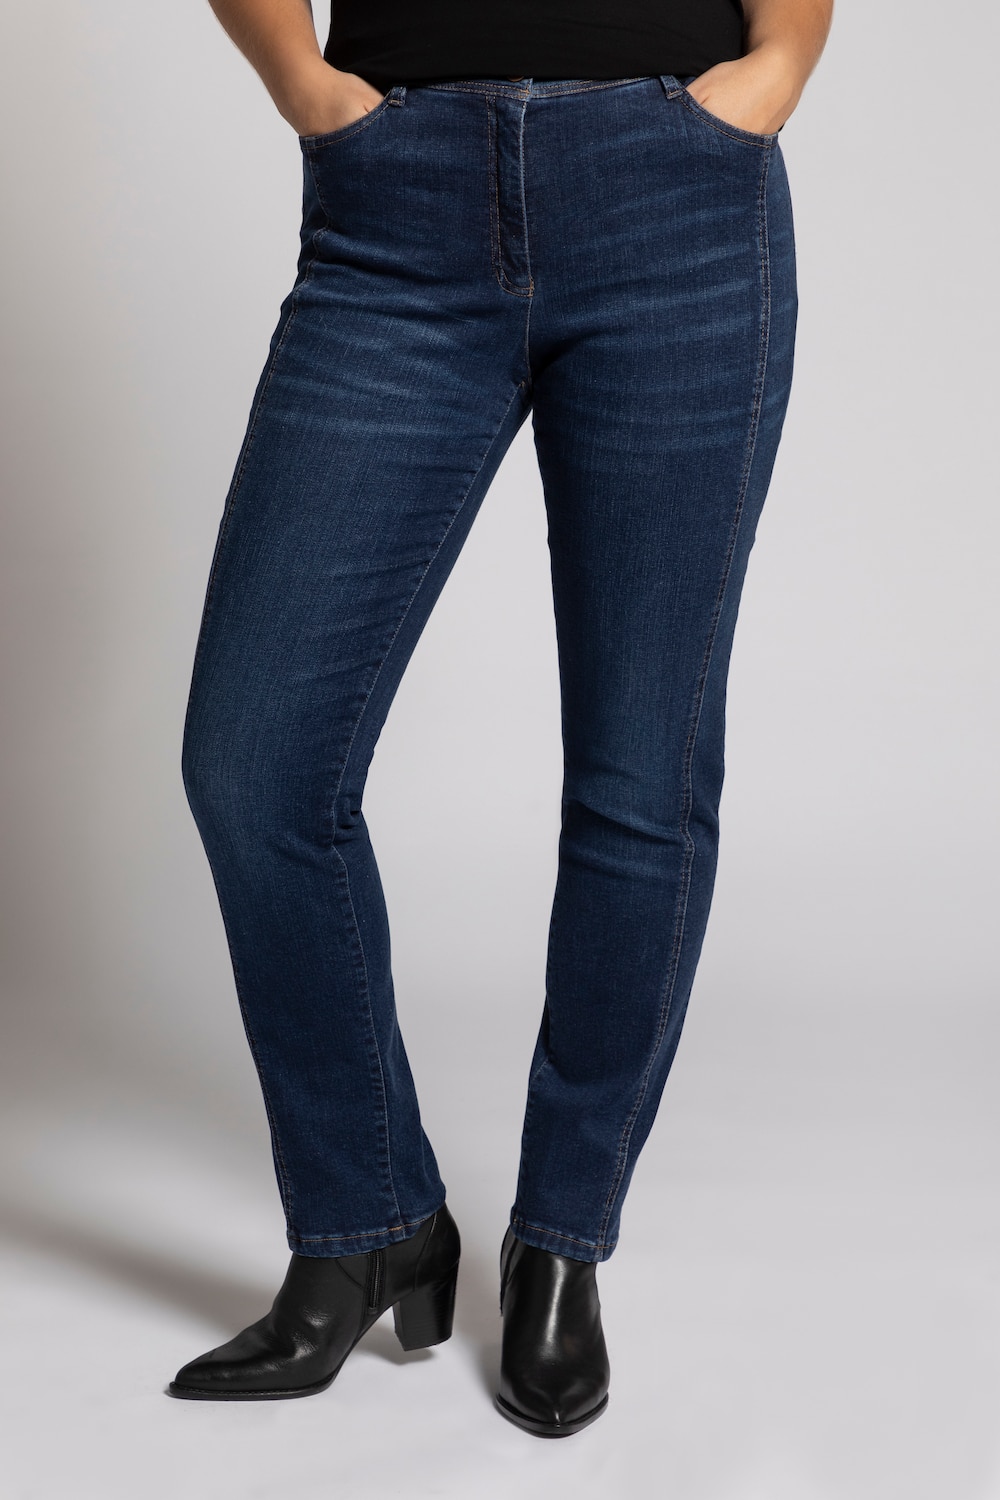 Grote Maten jeans Sienna, Dames, blauw, Maat: 54, Katoen/Synthetische vezels, Ulla Popken